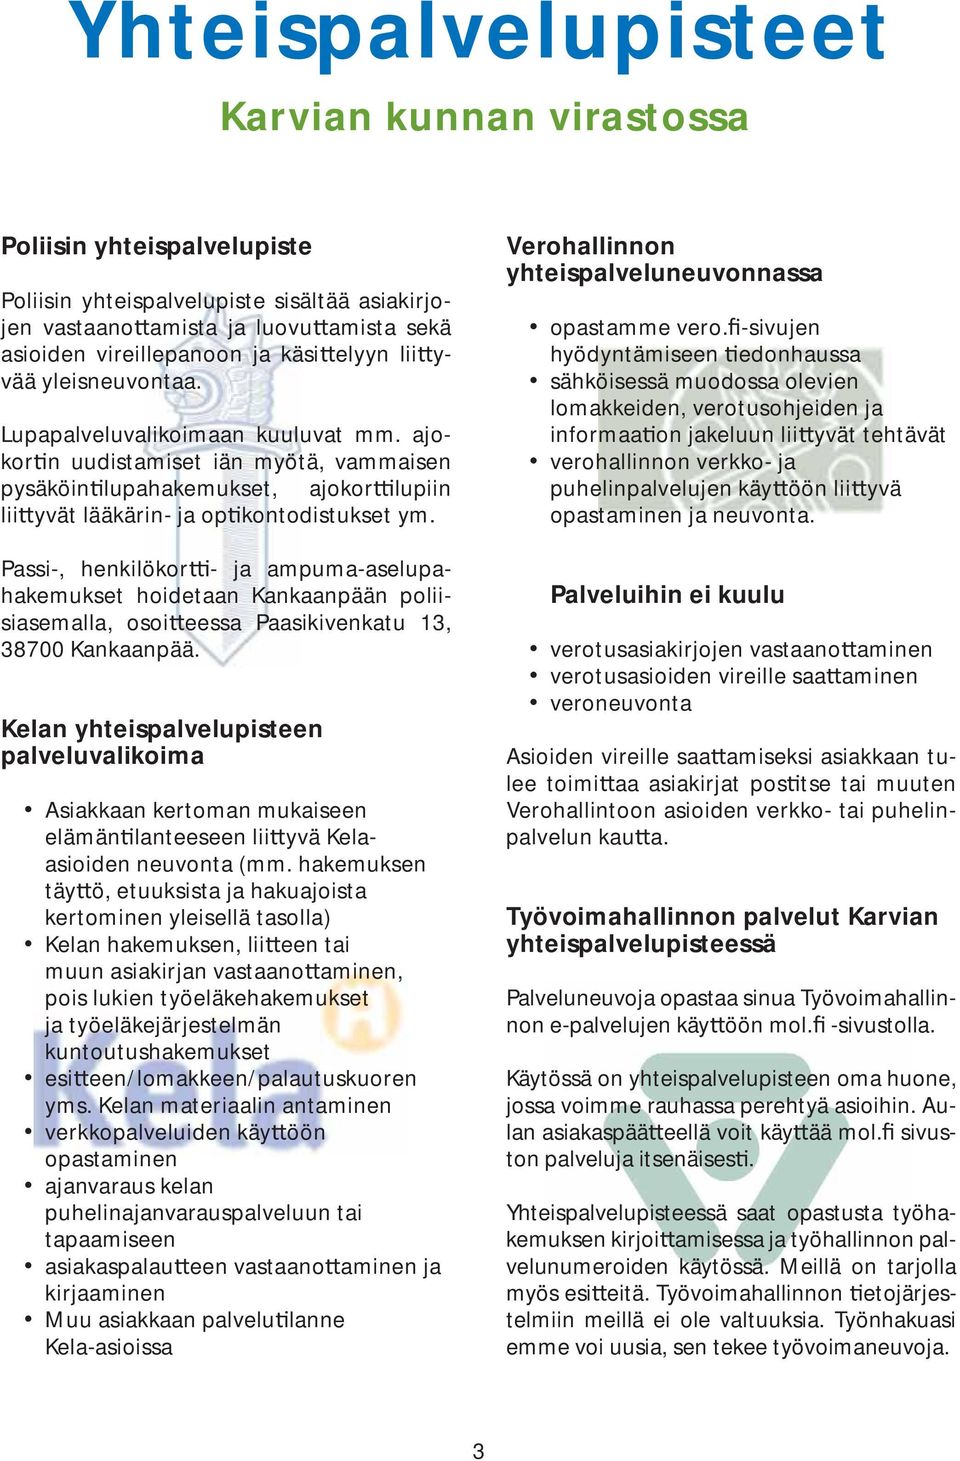 Passi-, henkilökor - ja ampuma-aselupahakemukset hoidetaan Kankaanpään poliisiasemalla, osoi eessa Paasikivenkatu 13, 38700 Kankaanpää.